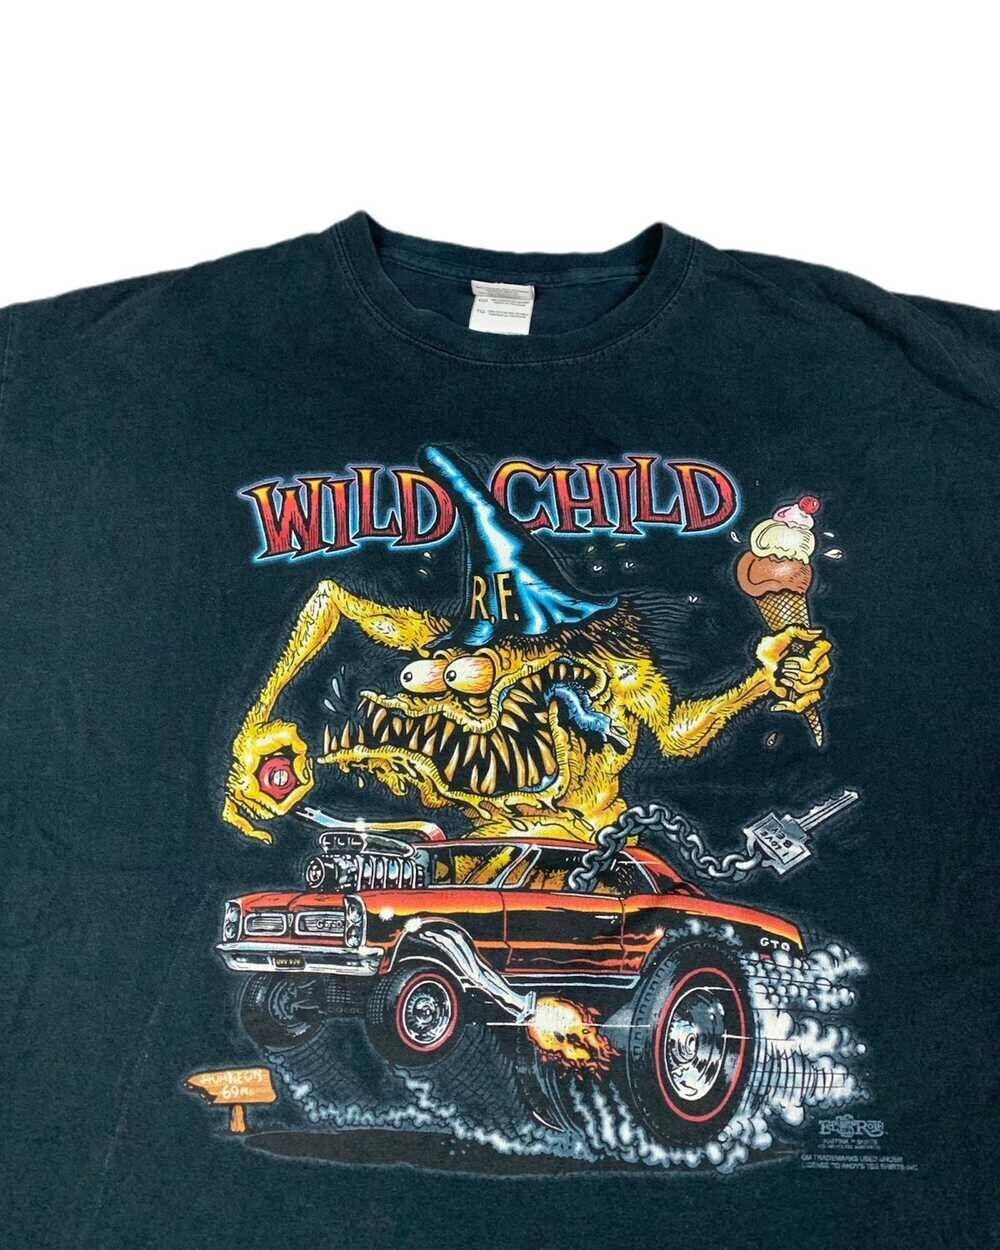 Vintage Vintage Ed Roth Rat Fink T-Shirt, Rat Fink Wild Child T-Shirt For Men